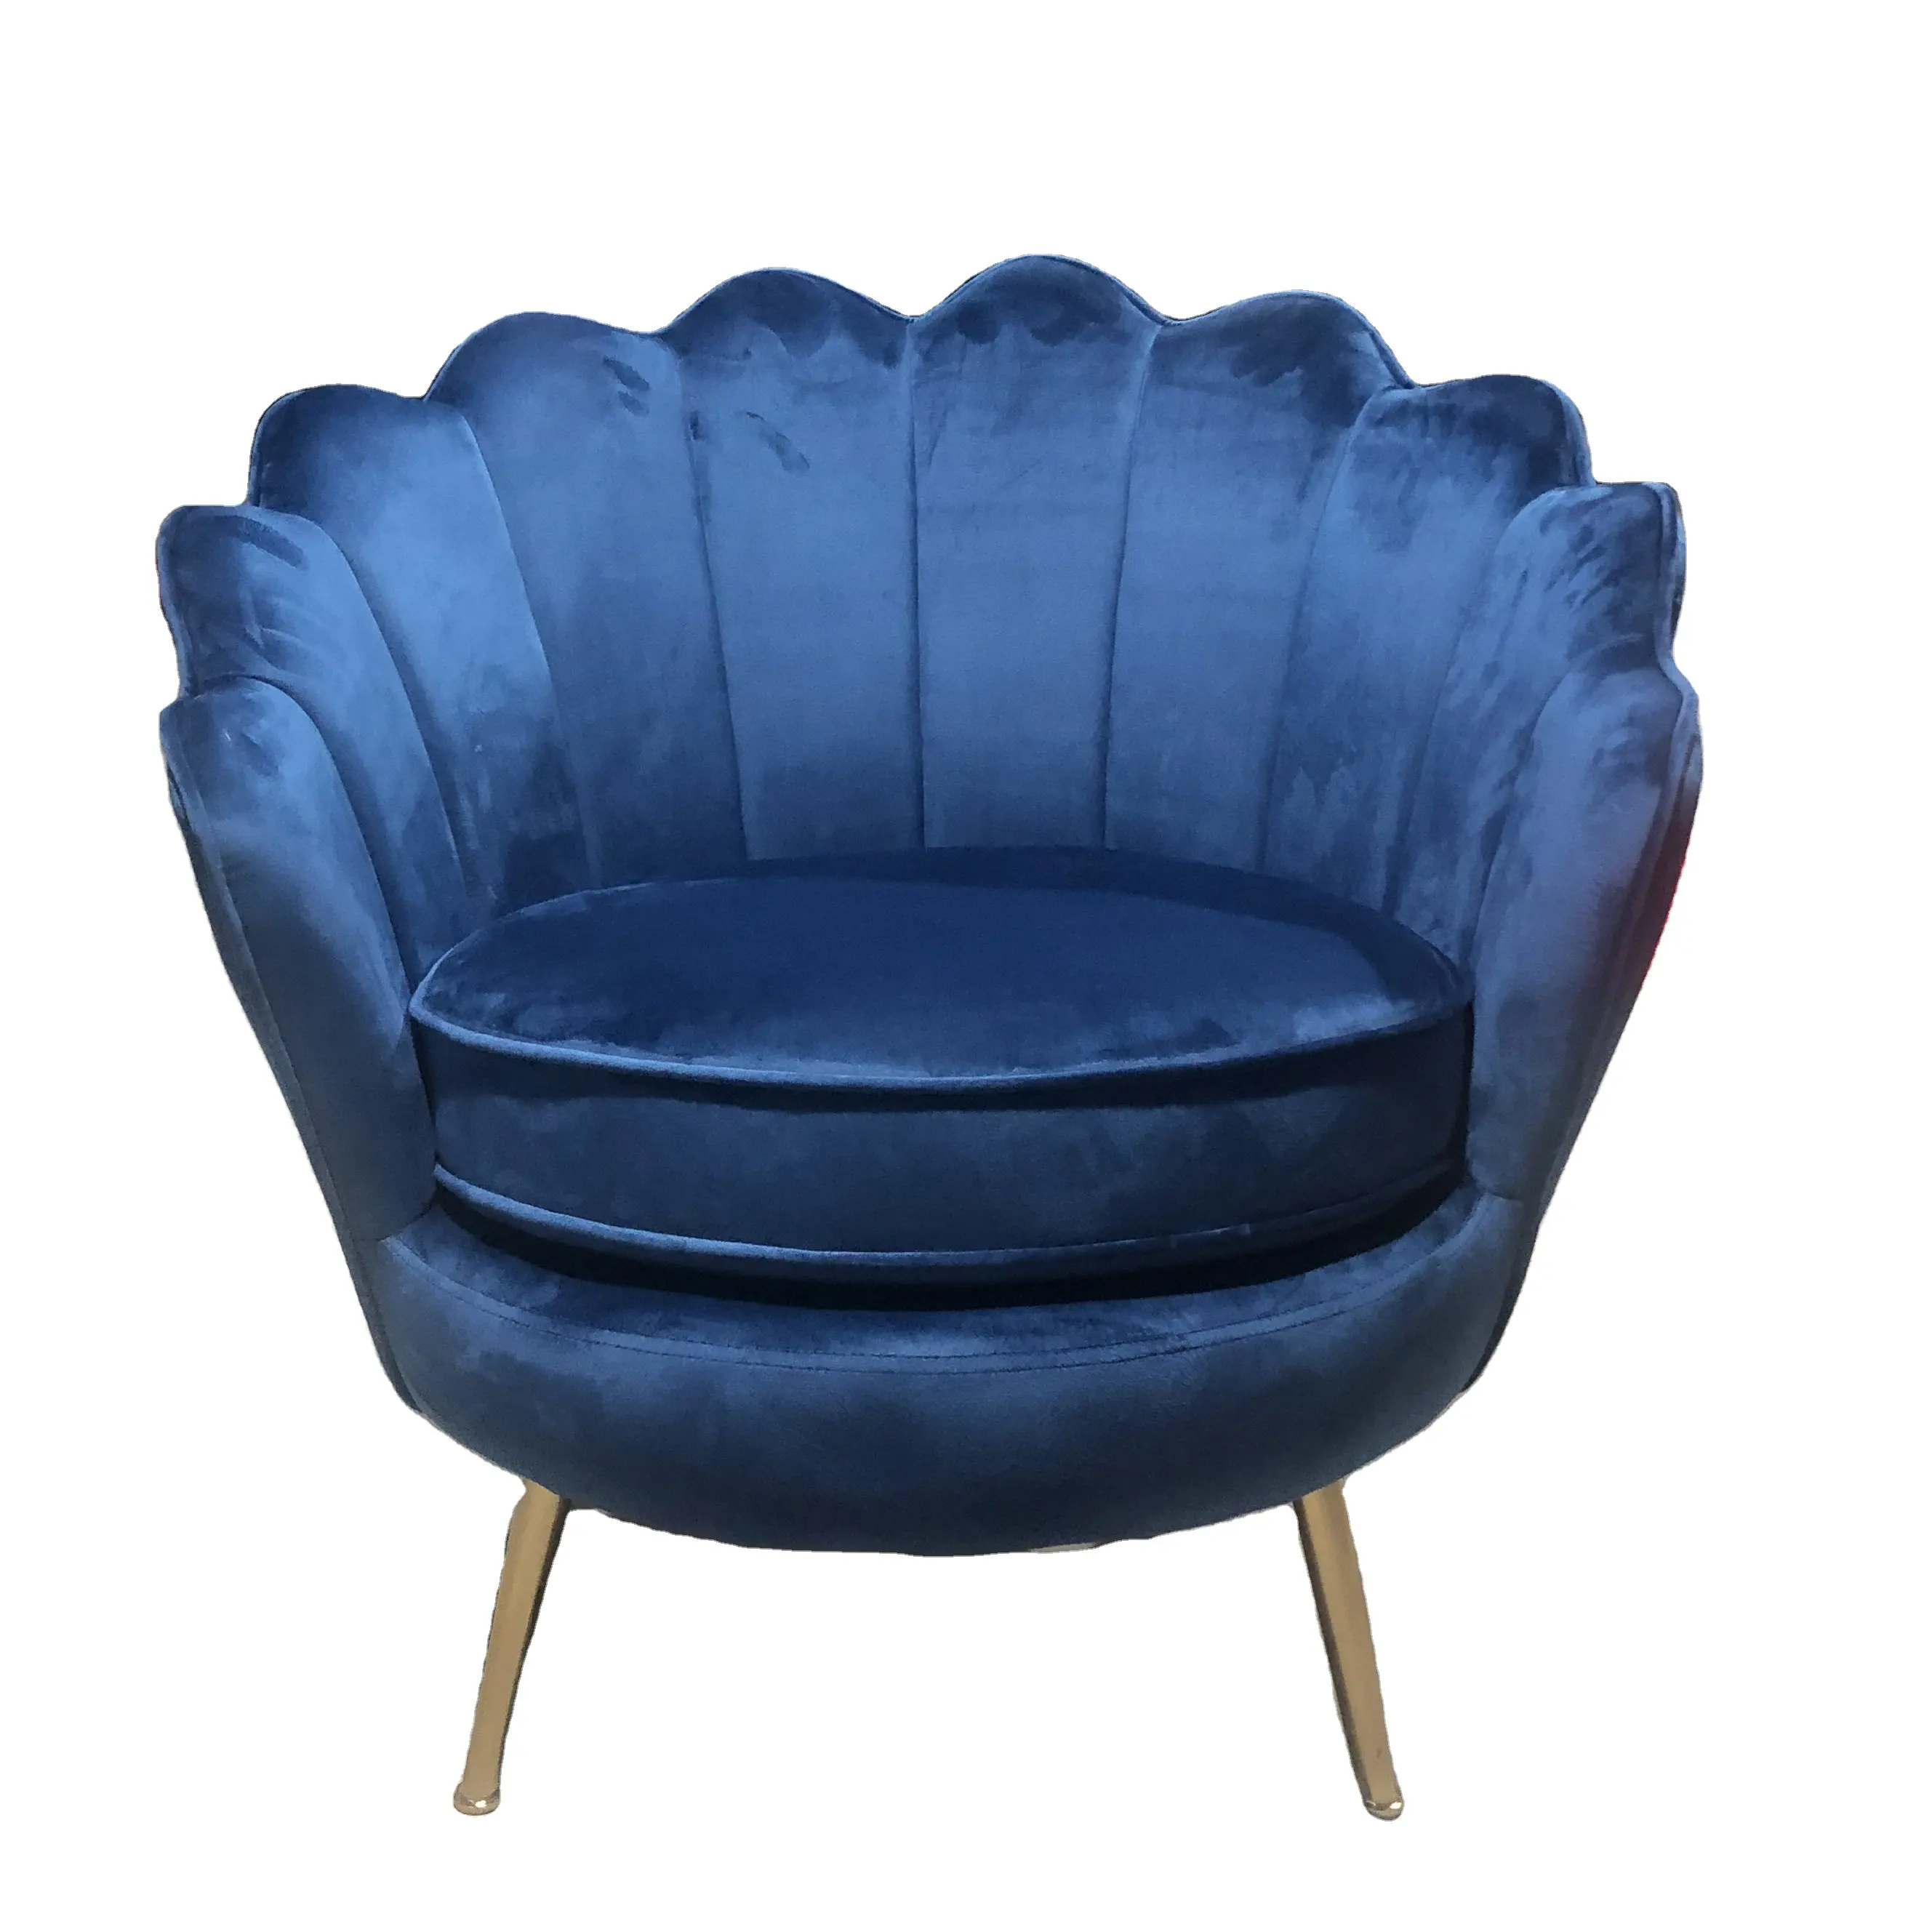 Upholstered Velvet Petal Flowered Arm chair with Metal Legs For Living Room